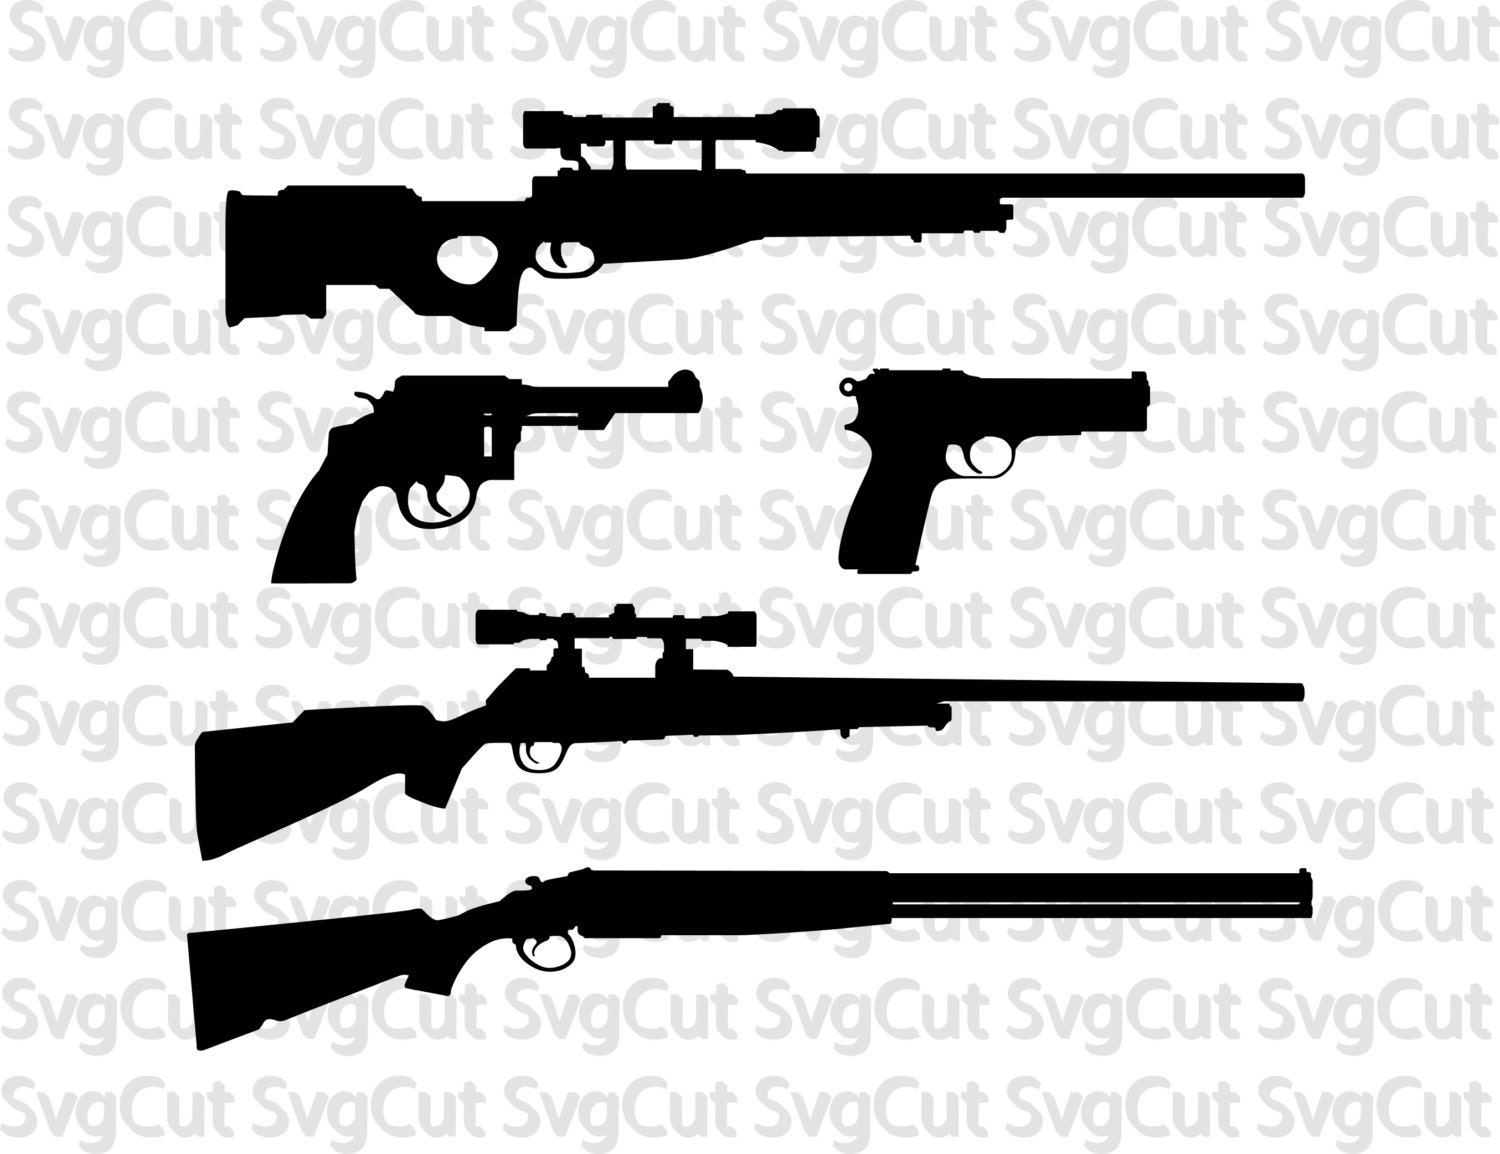 Download Guns SVG pack Guns clipart vector Digital download guns